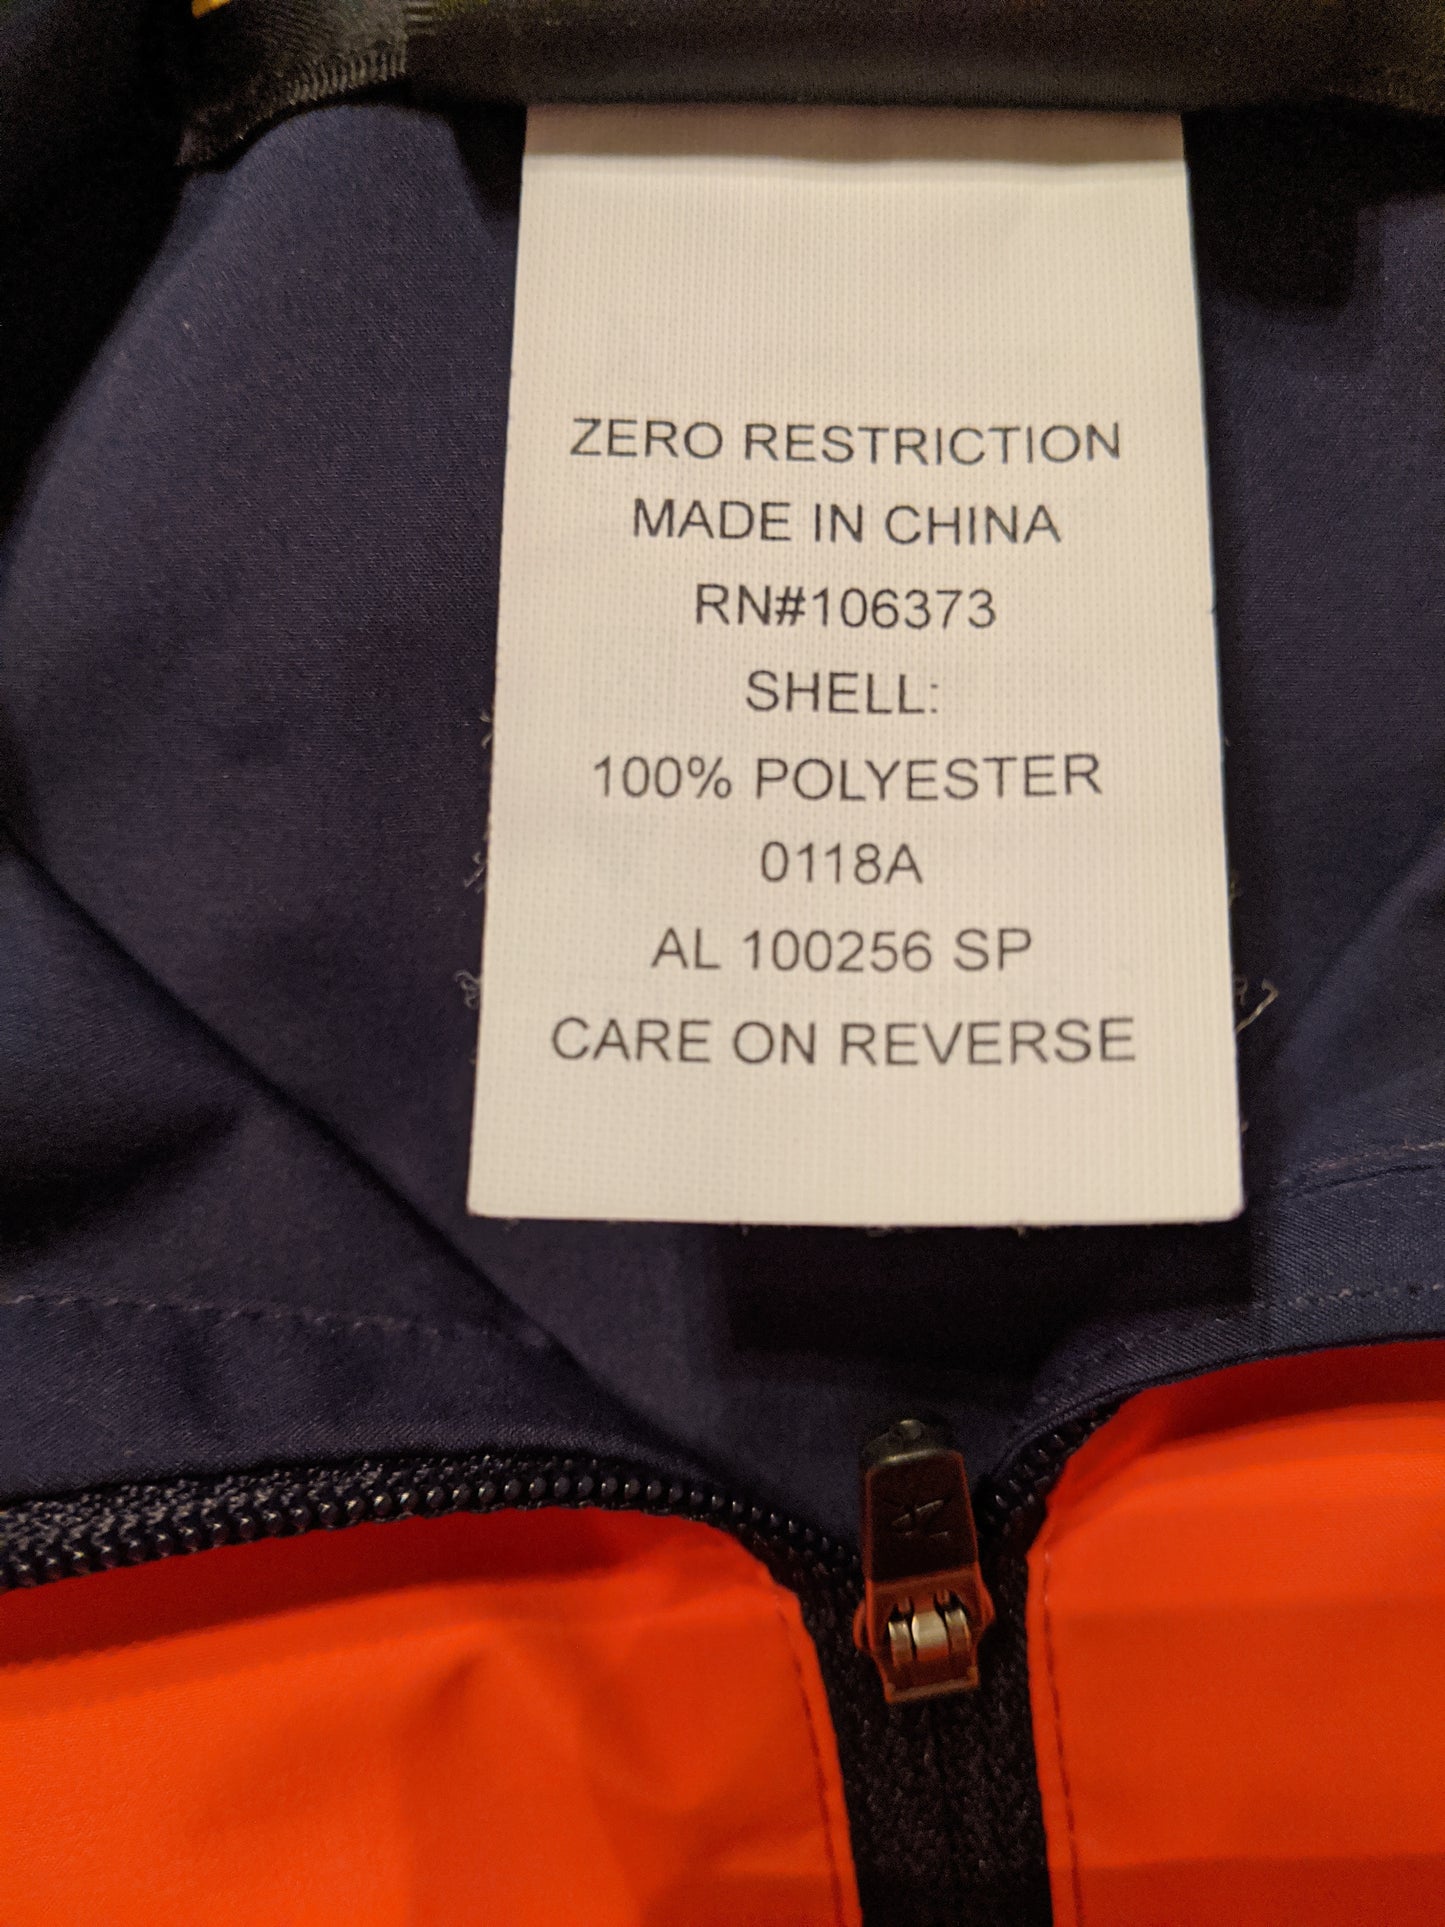 Zero Restriction Golf Outerwear